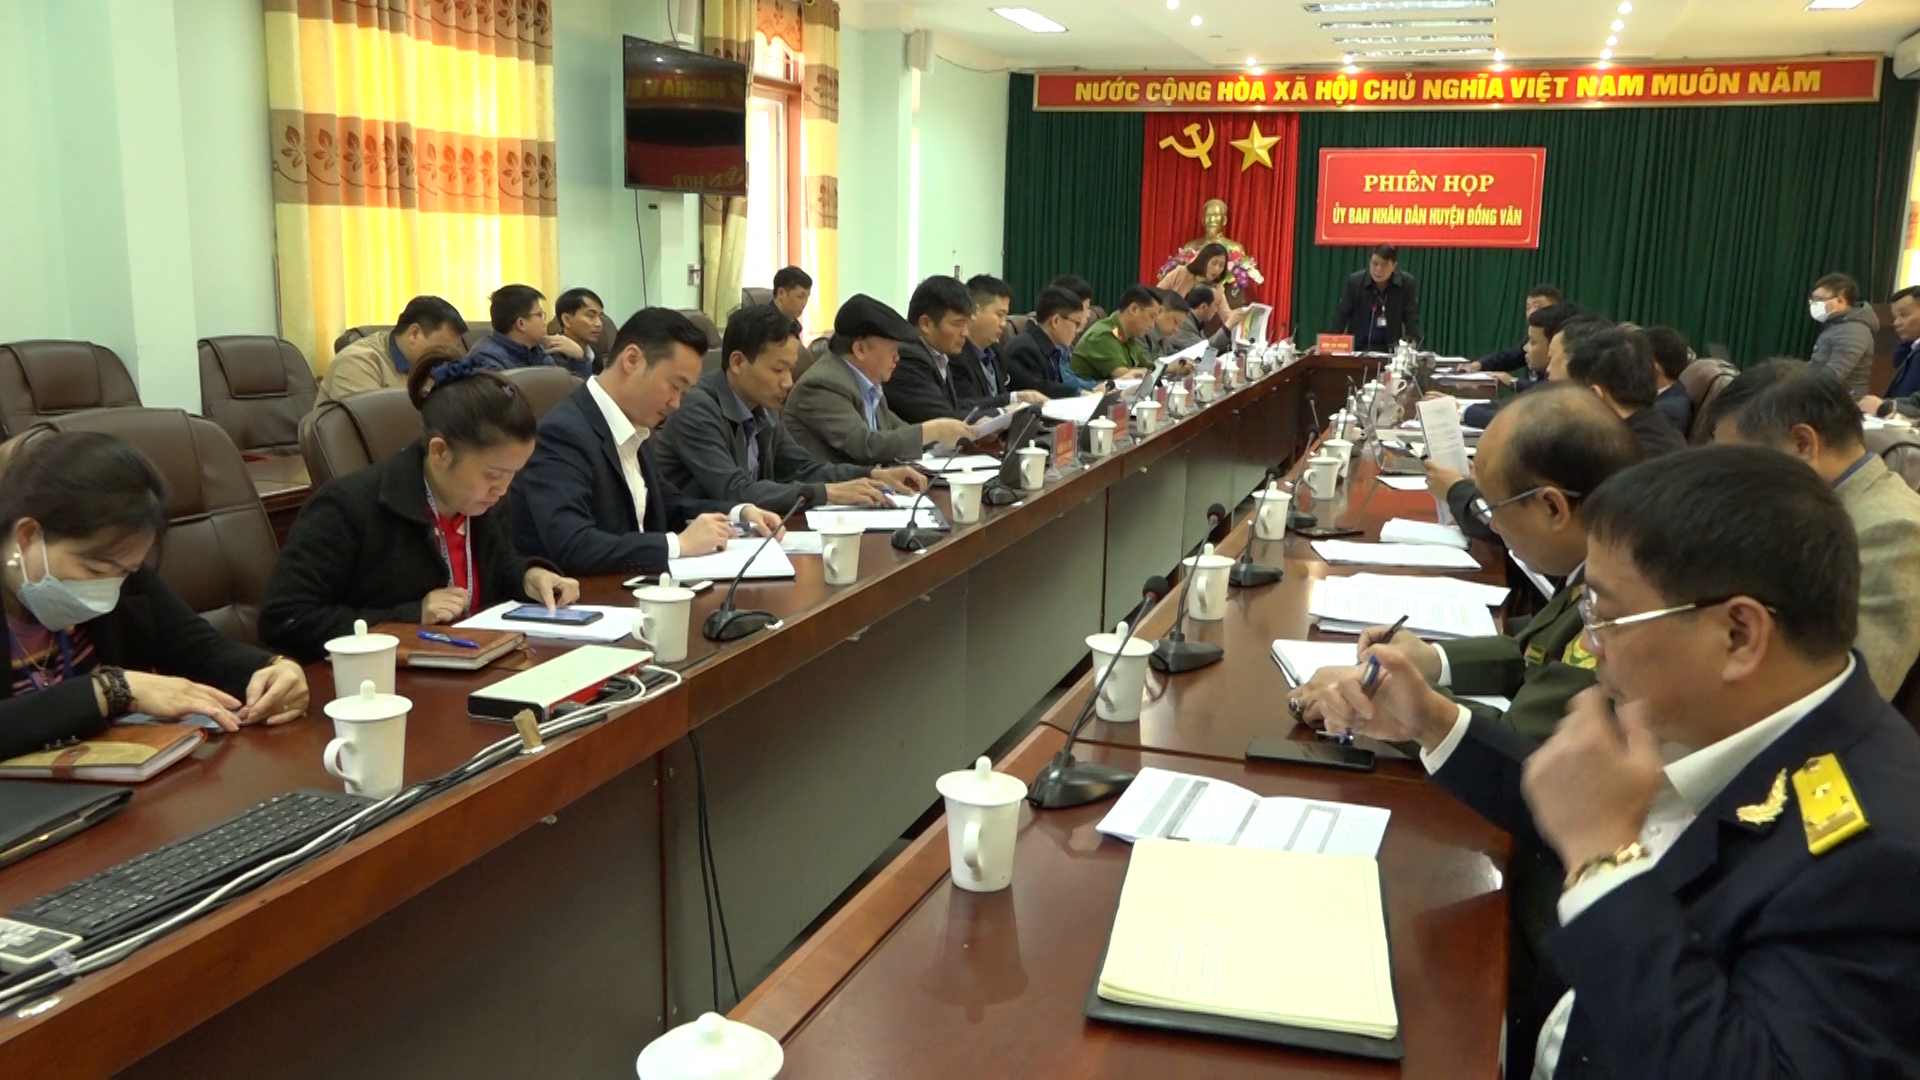 Phiên họp tháng 10 UBND huyện Đồng Văn